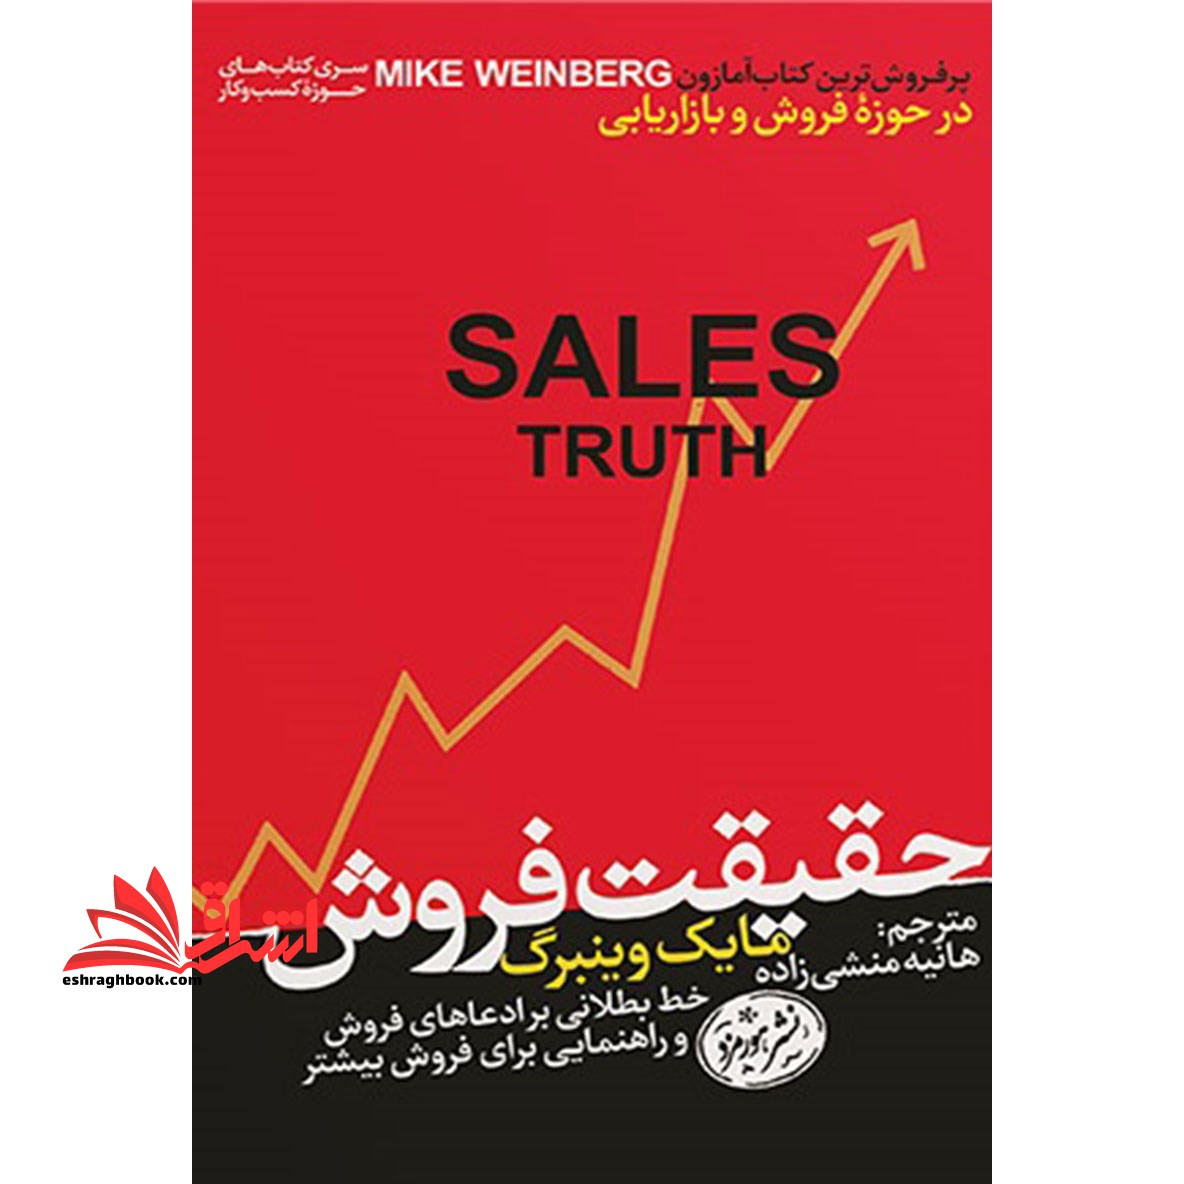 حقیقت فروش: خط بطلانی بر ادعاهای فروش و راهنمایی برای فروش بیشتر